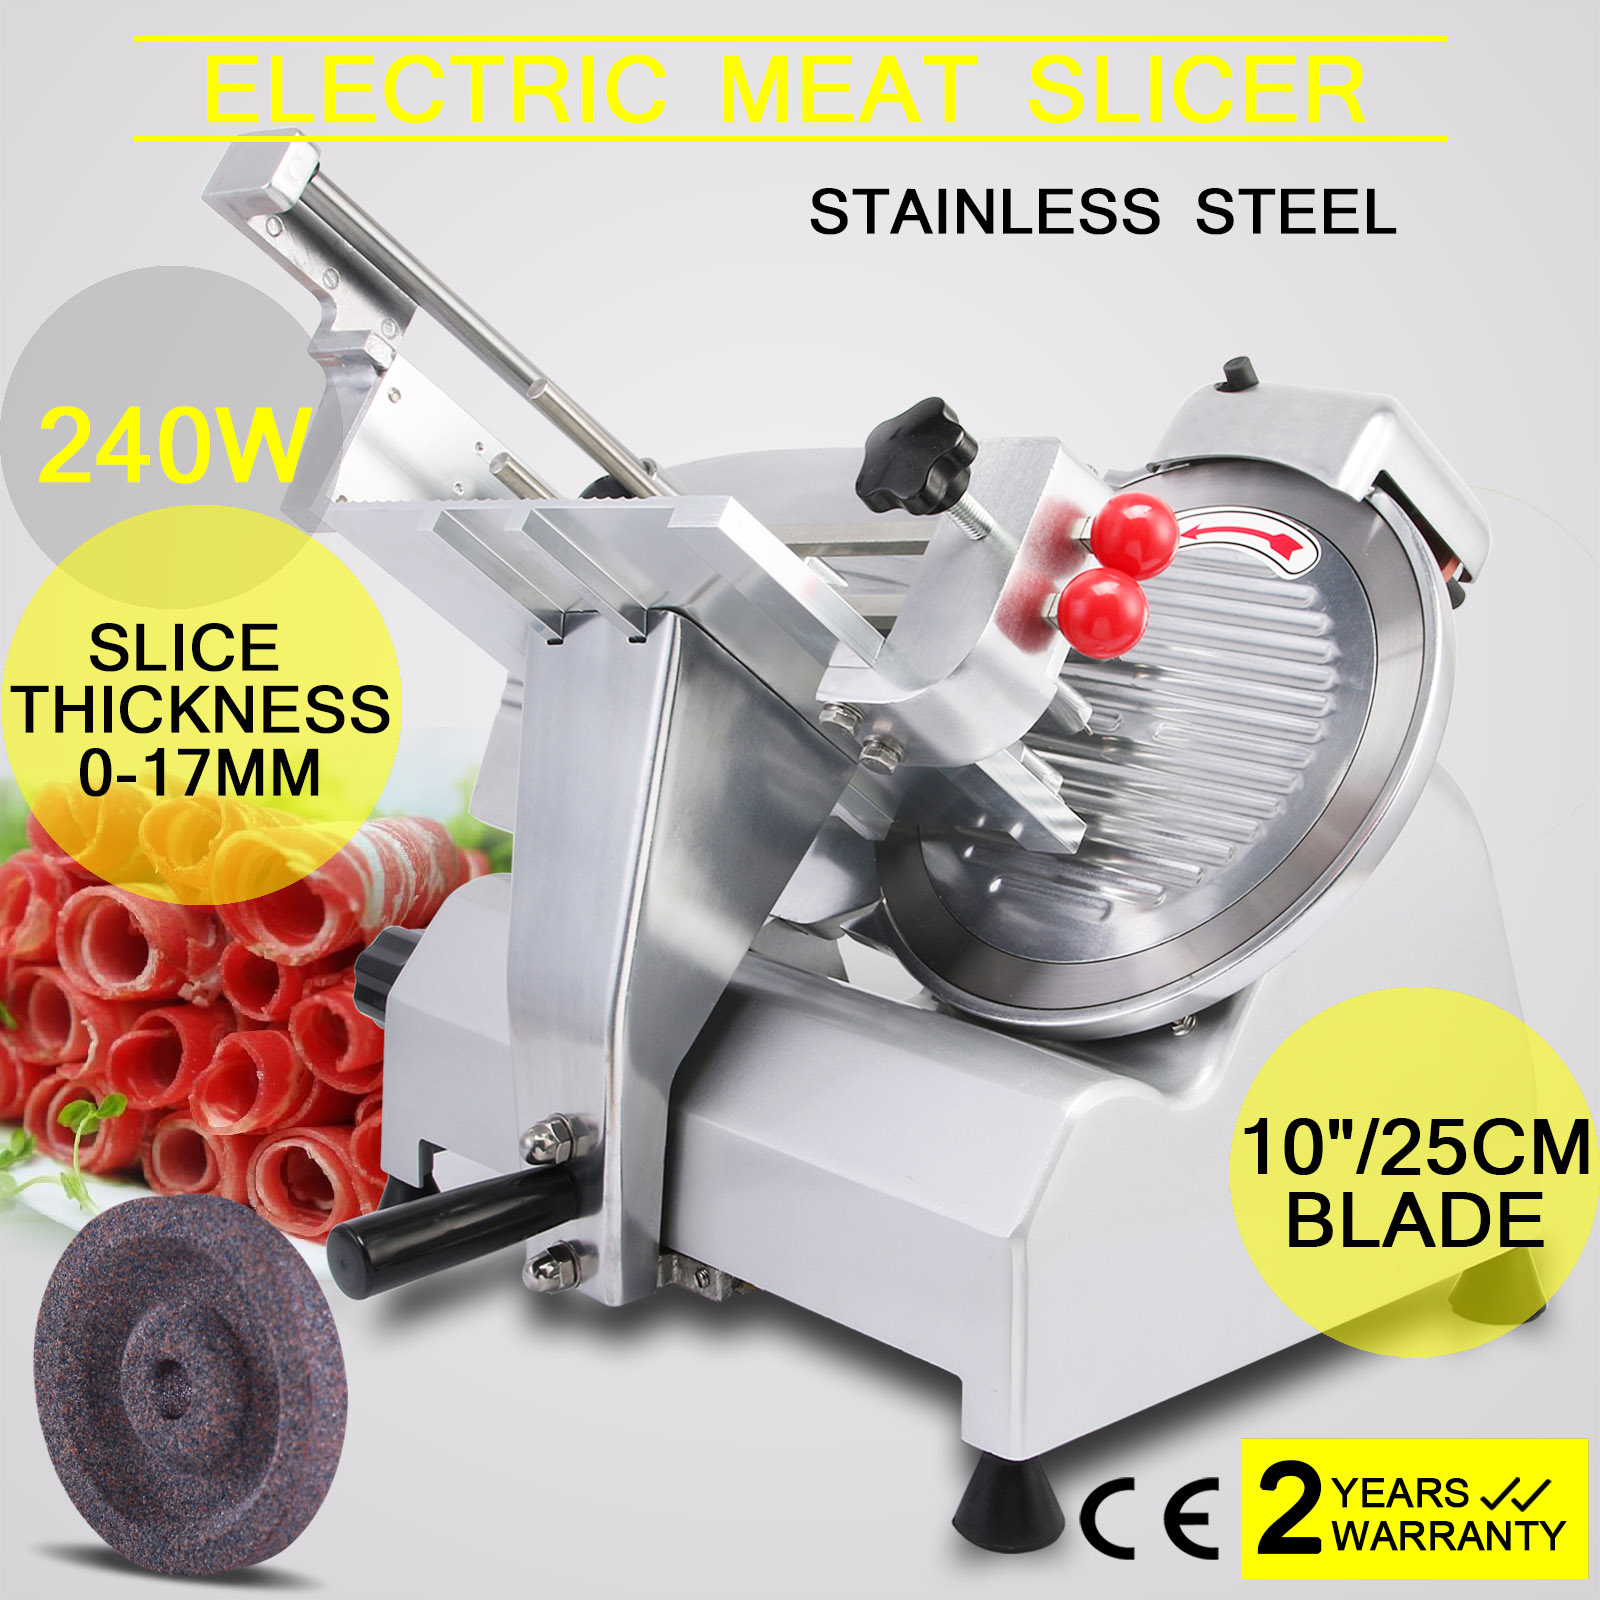 10" Blade Deli Meat Slicer Electric Fruit Cooking Bread 0 17mm Slice